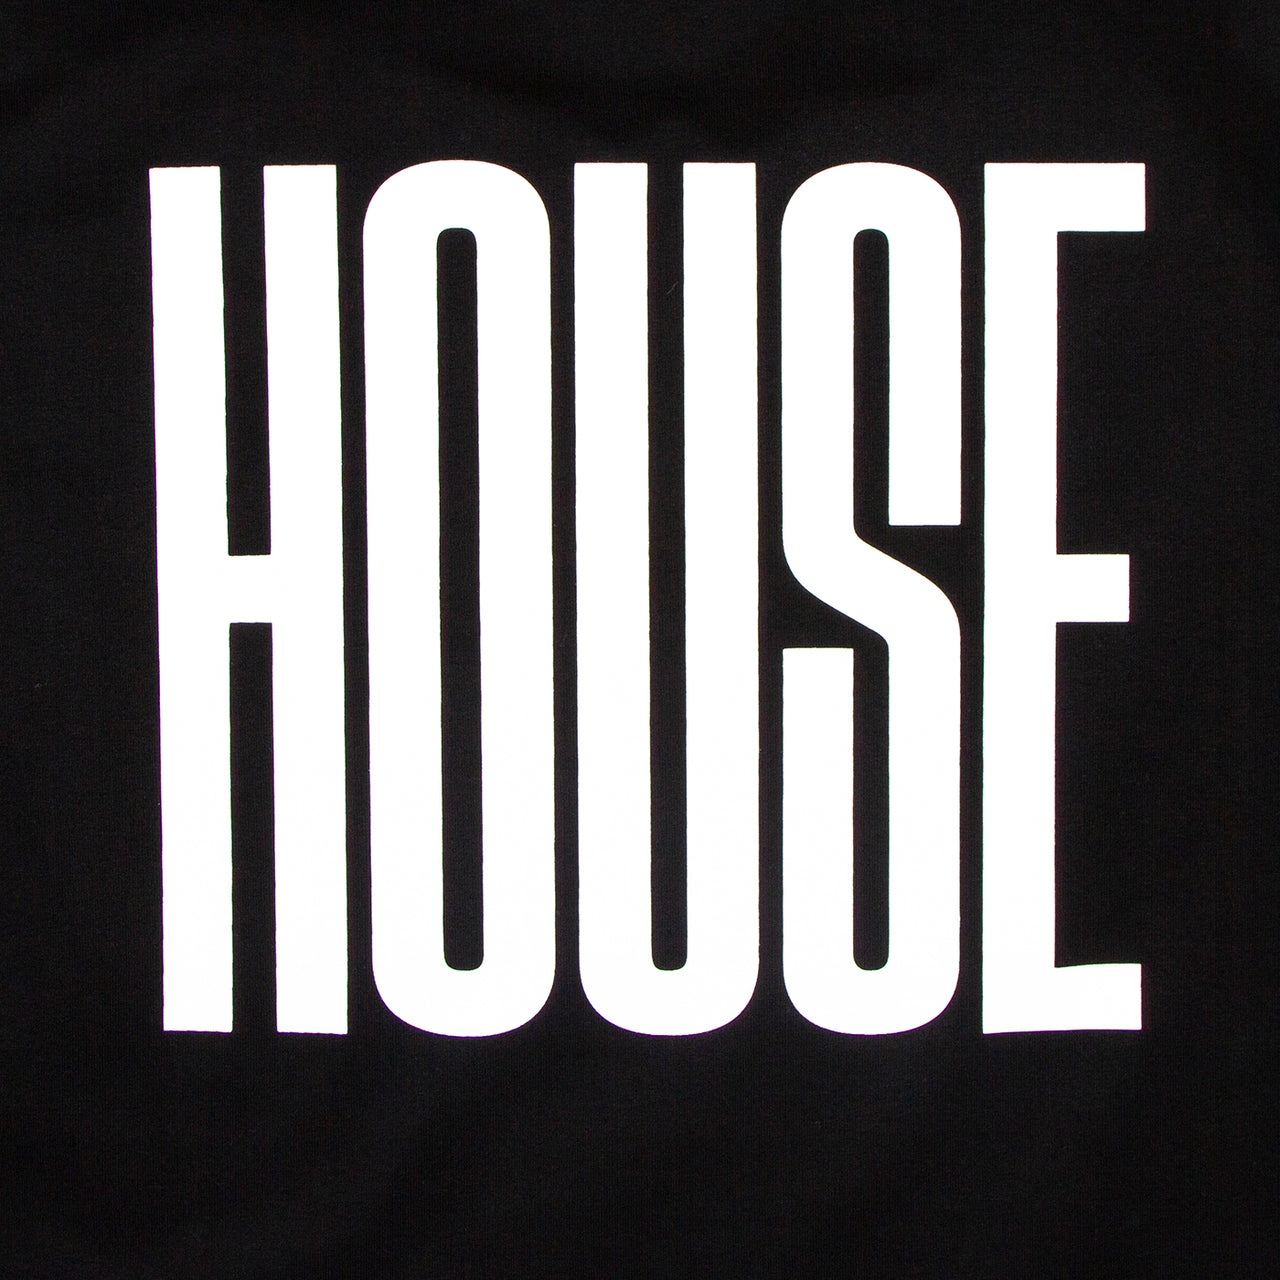 Higher House  - Oversized Tshirt - Black